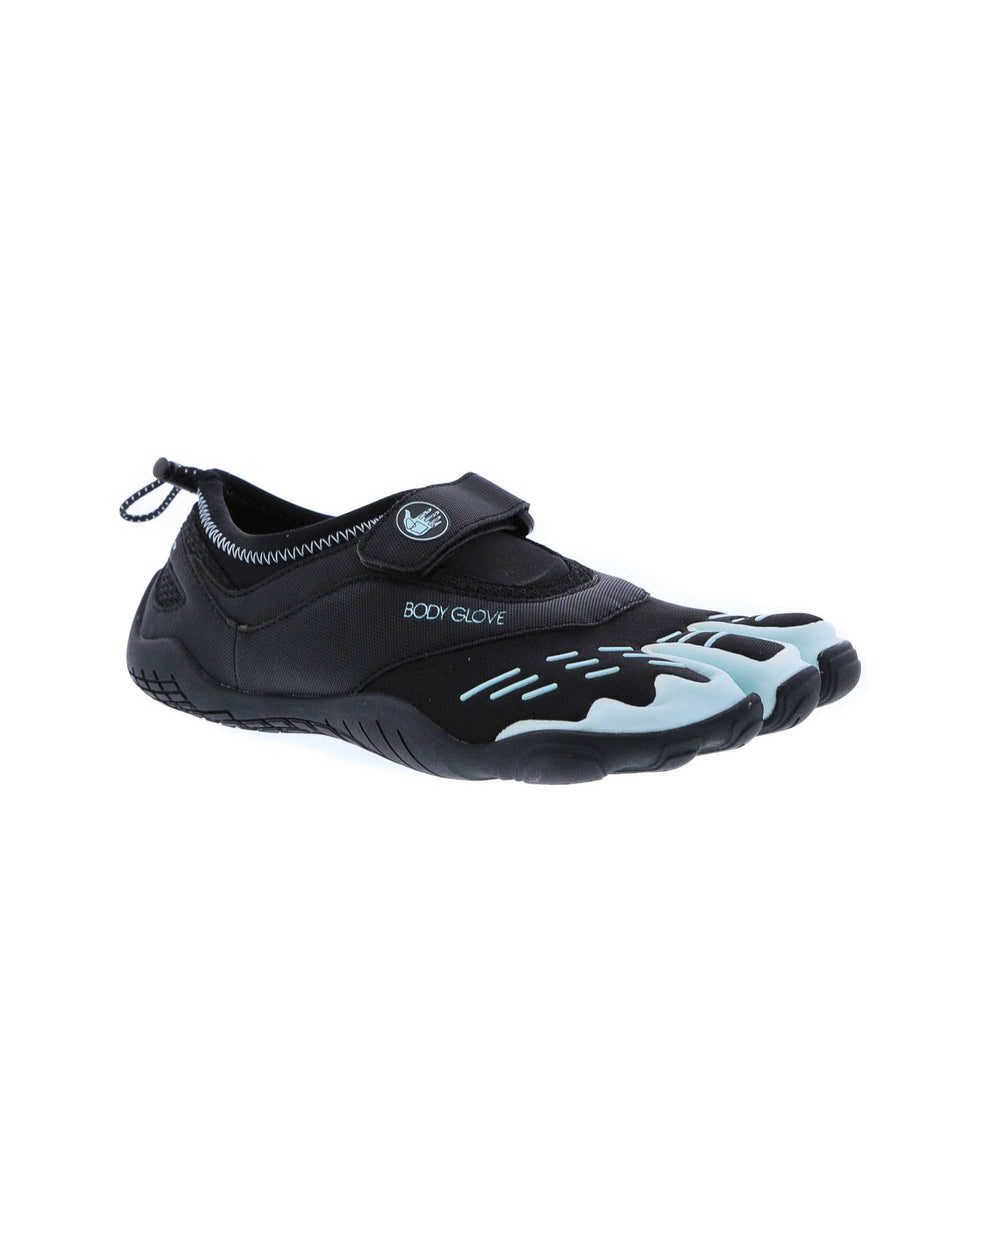 Body Glove 3T - Zapatos de agua para hombre